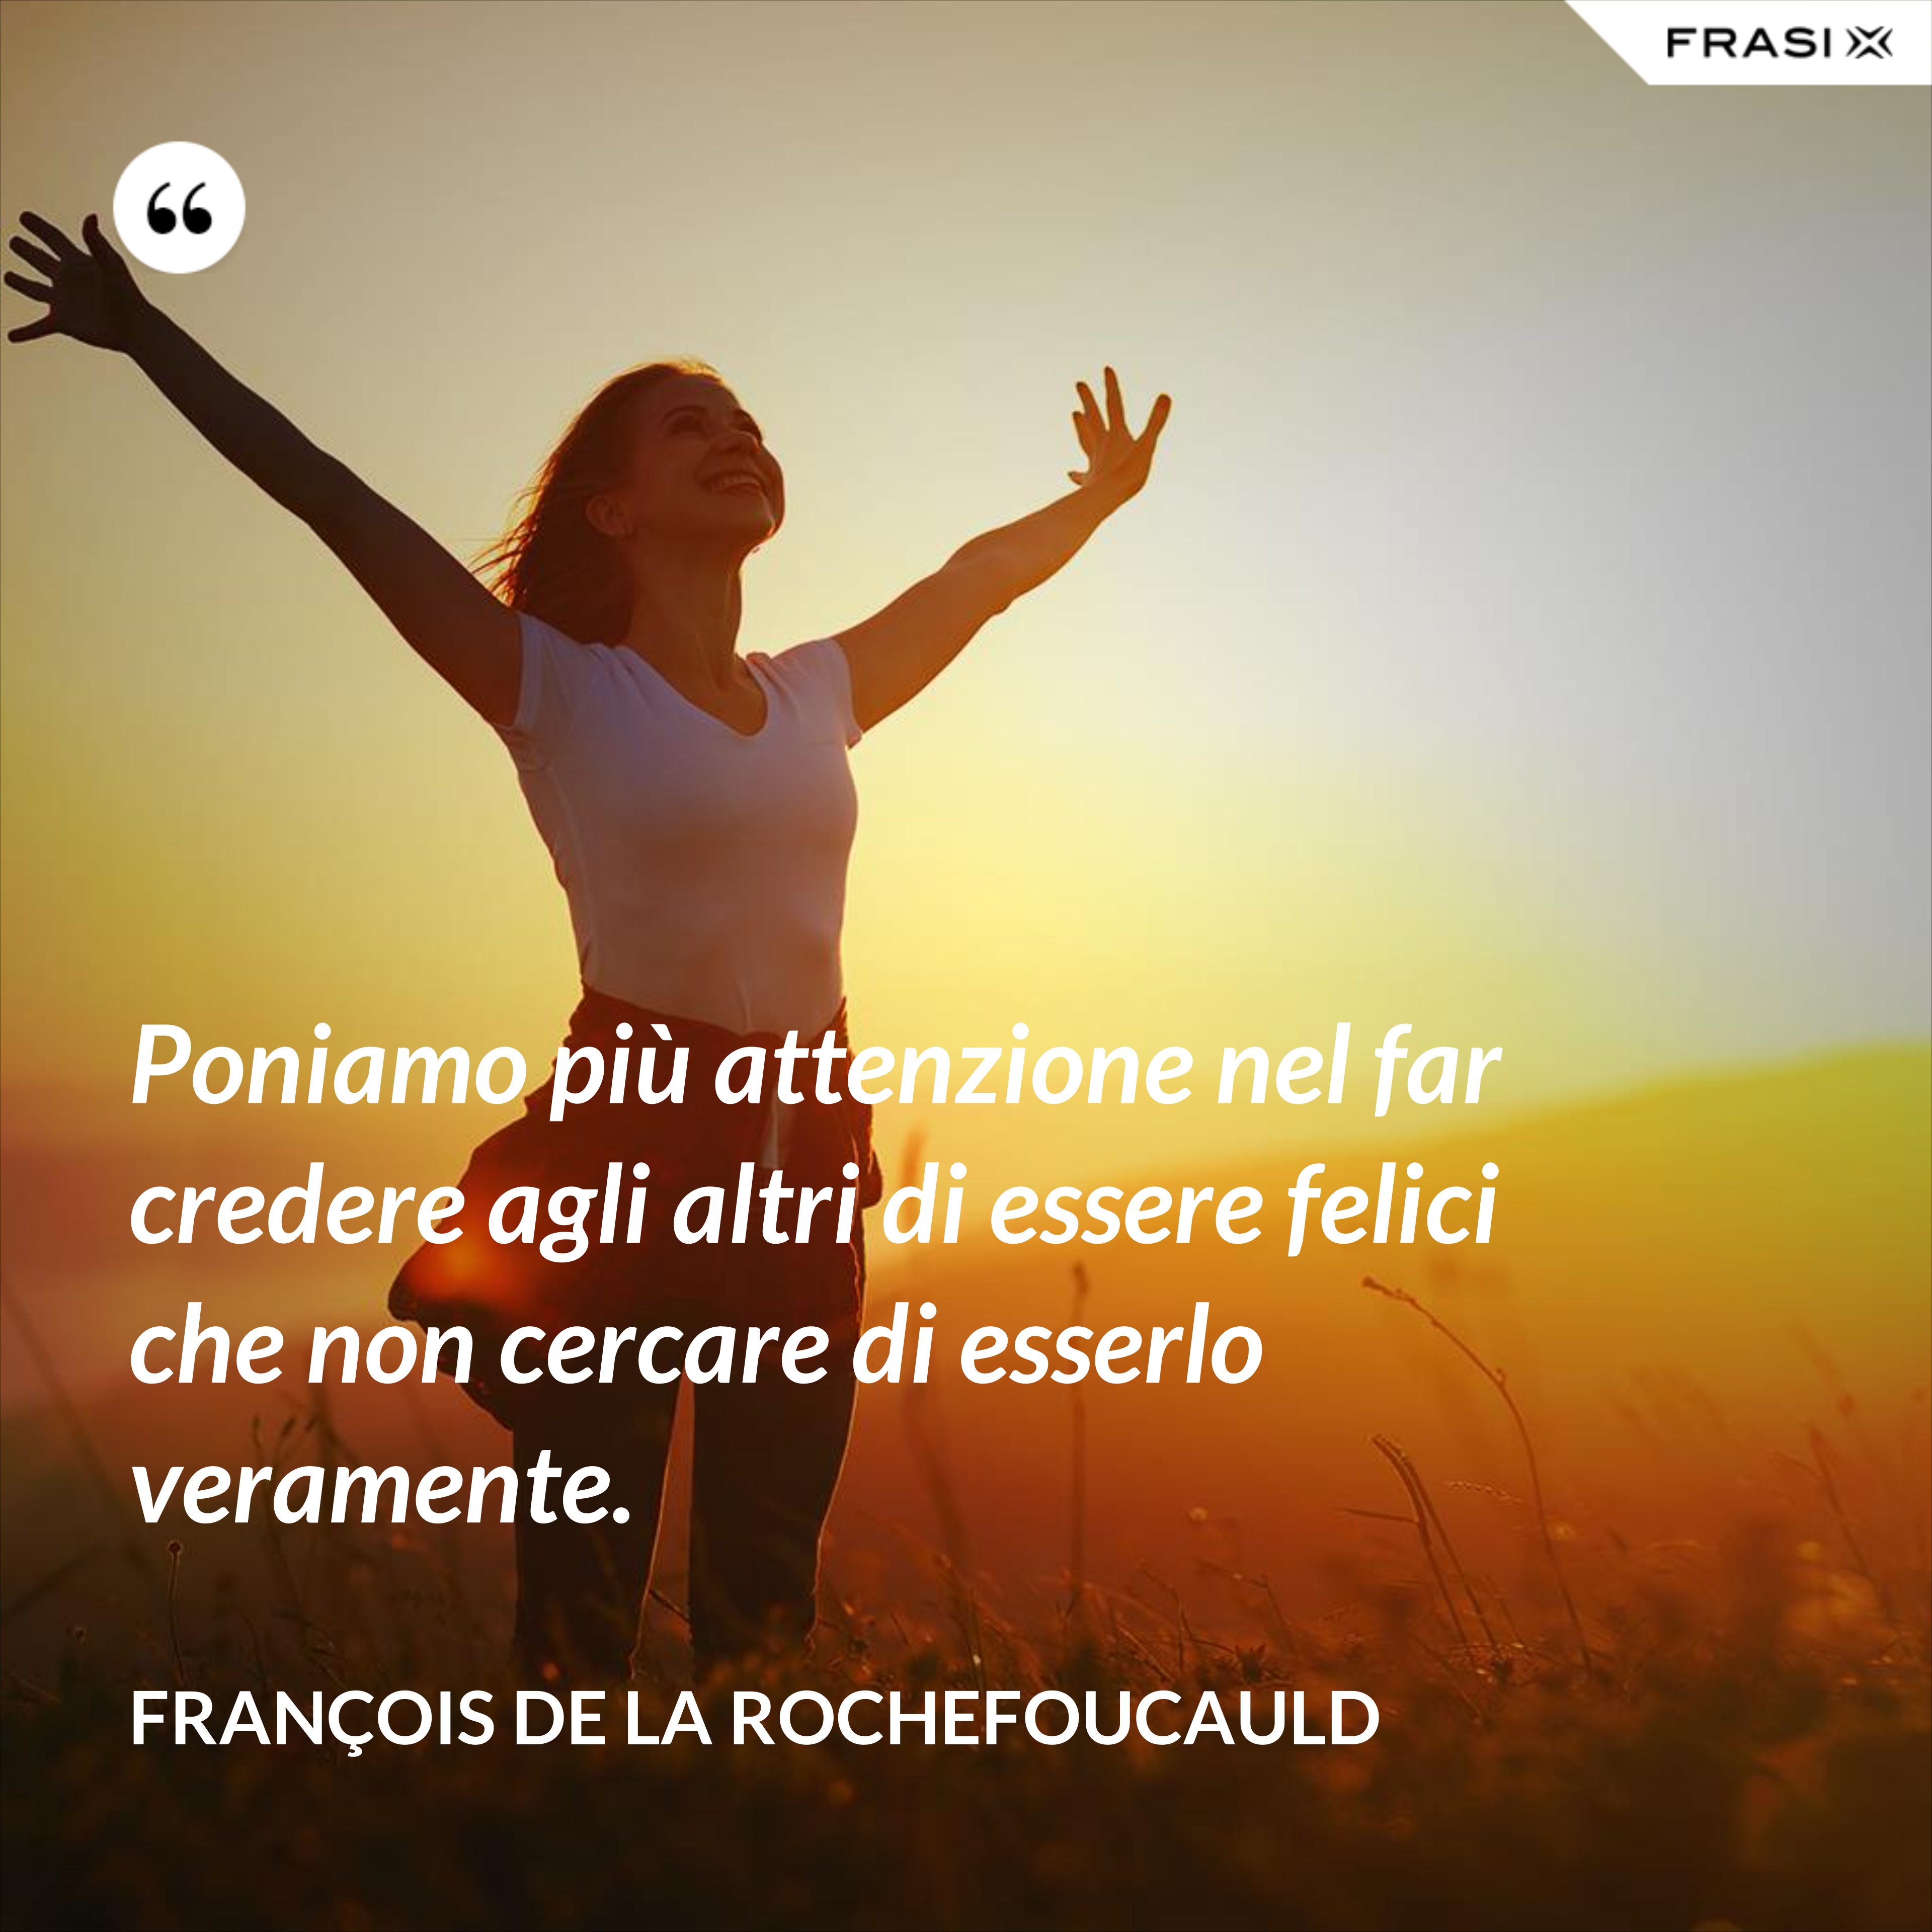 Poniamo più attenzione nel far credere agli altri di essere felici che non cercare di esserlo veramente. - François de La Rochefoucauld